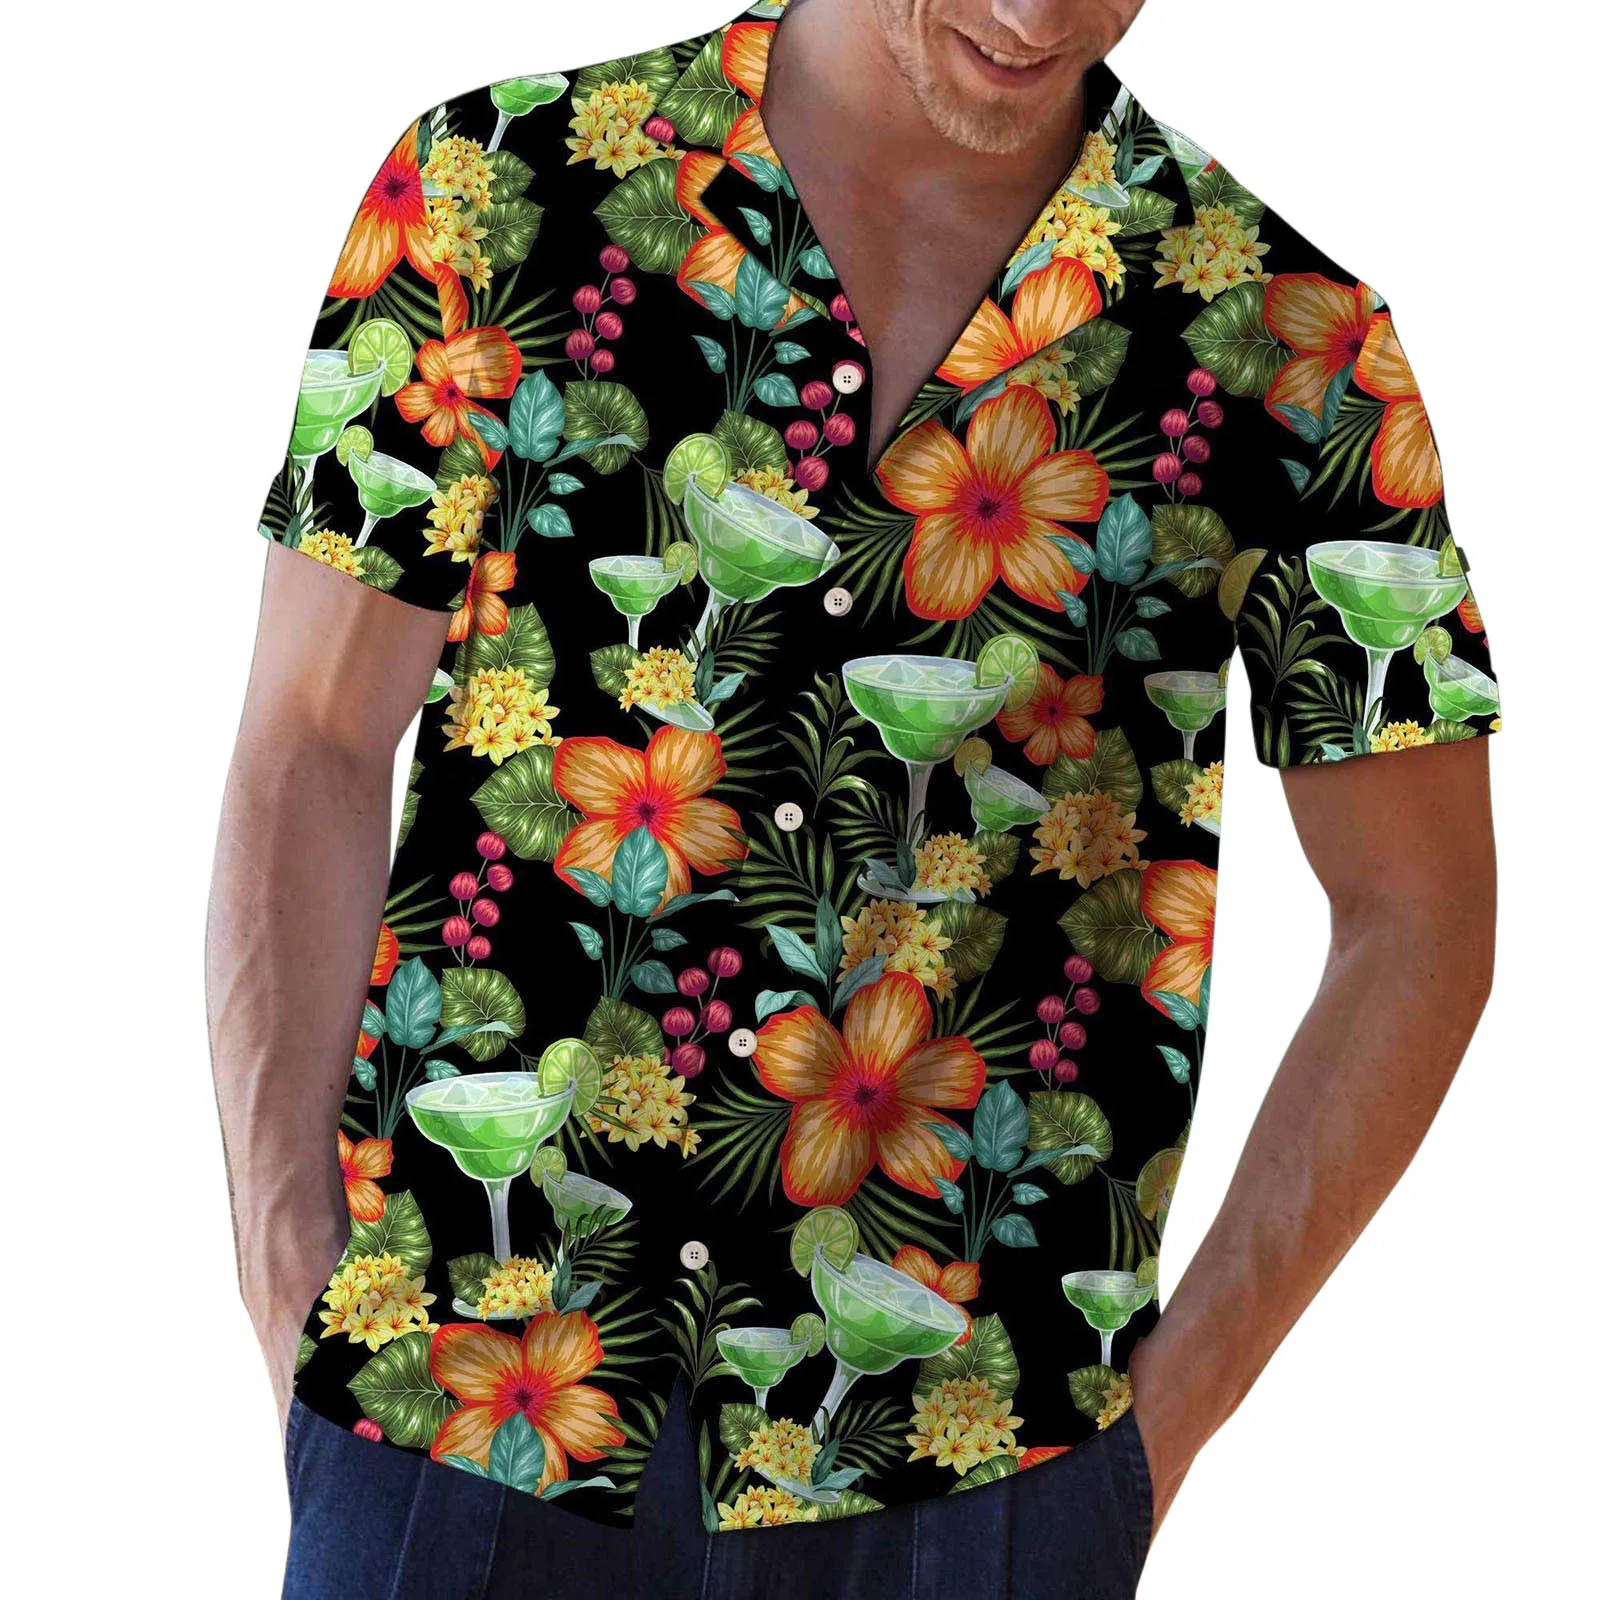 

Men's Hawaii Printed Shirts 2022 Summer Turndown Collar Casual Loose Short-Sleeved Shirts Blouse mens clothing camisas masculina